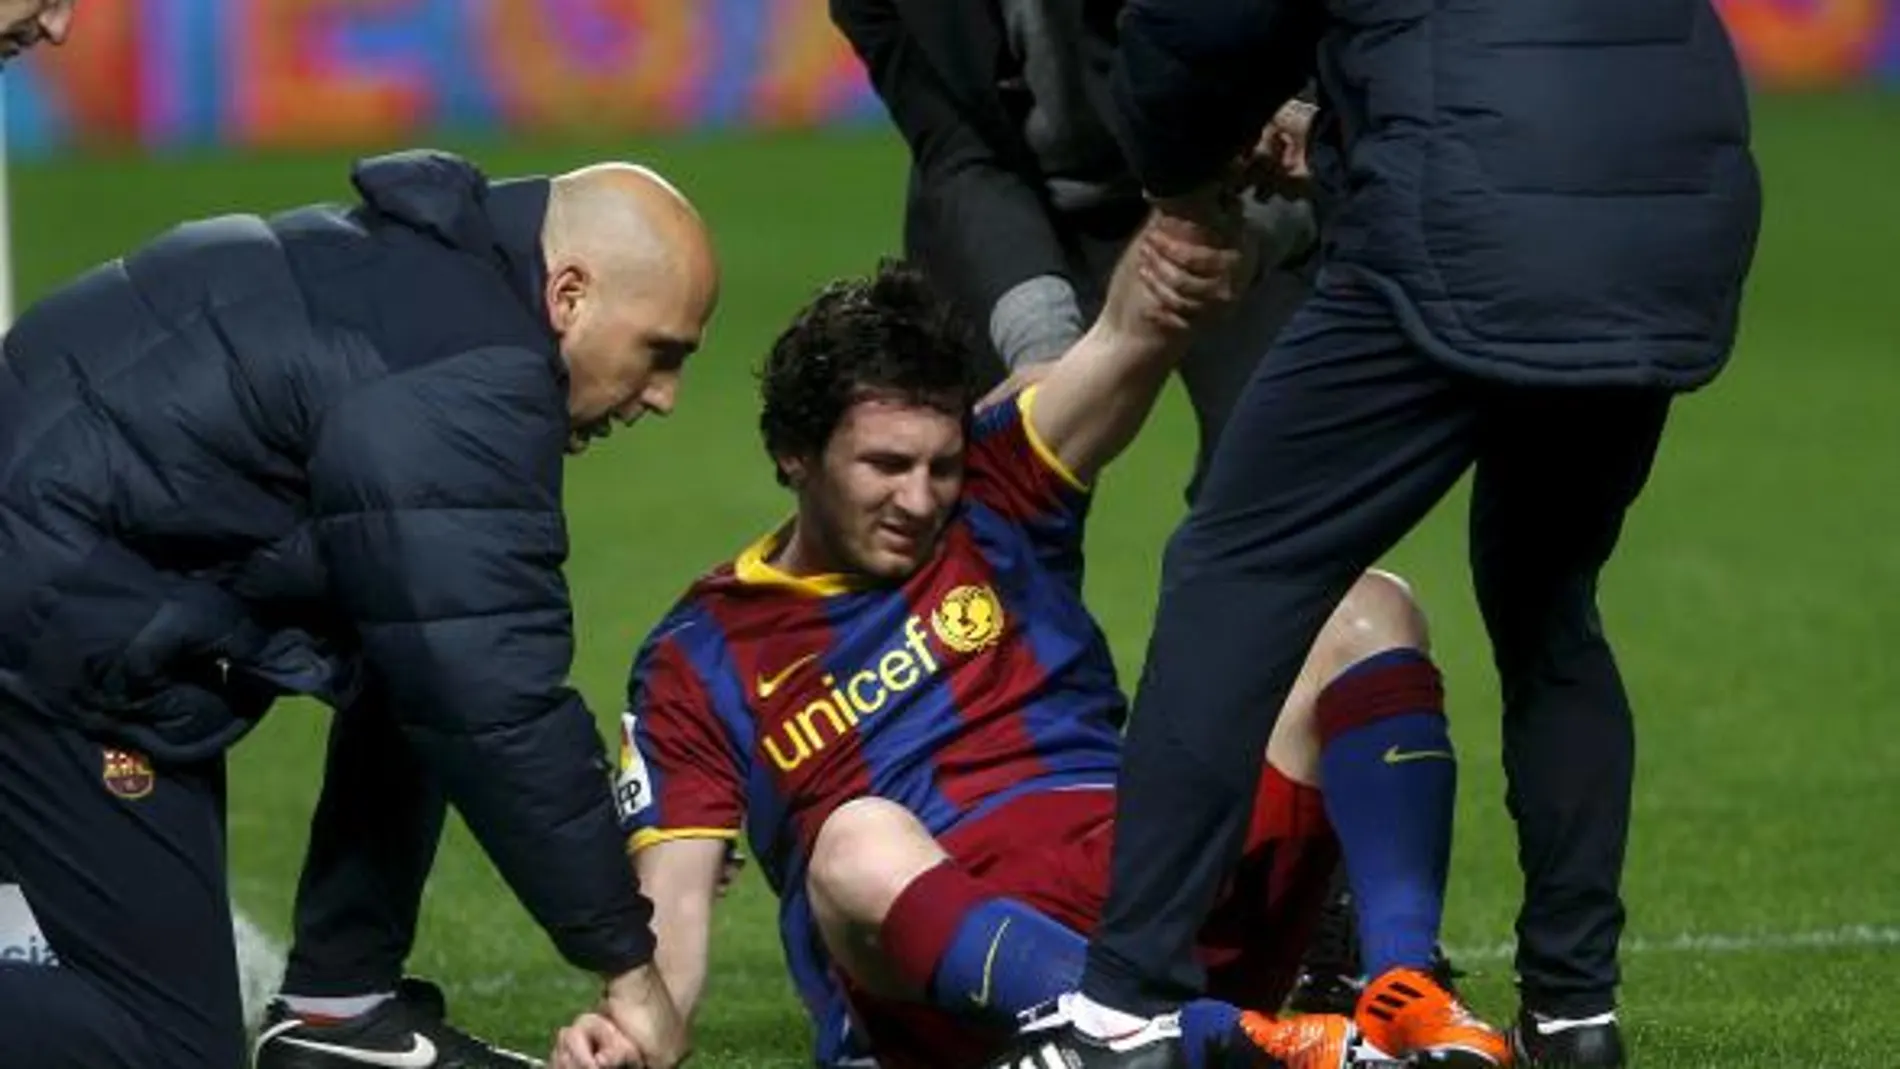 El delantero argentino del FC Barcelona Lionel Messi (c) recibe asistencia médica tras chocar con el portero del Sevilla CF Javi Varas